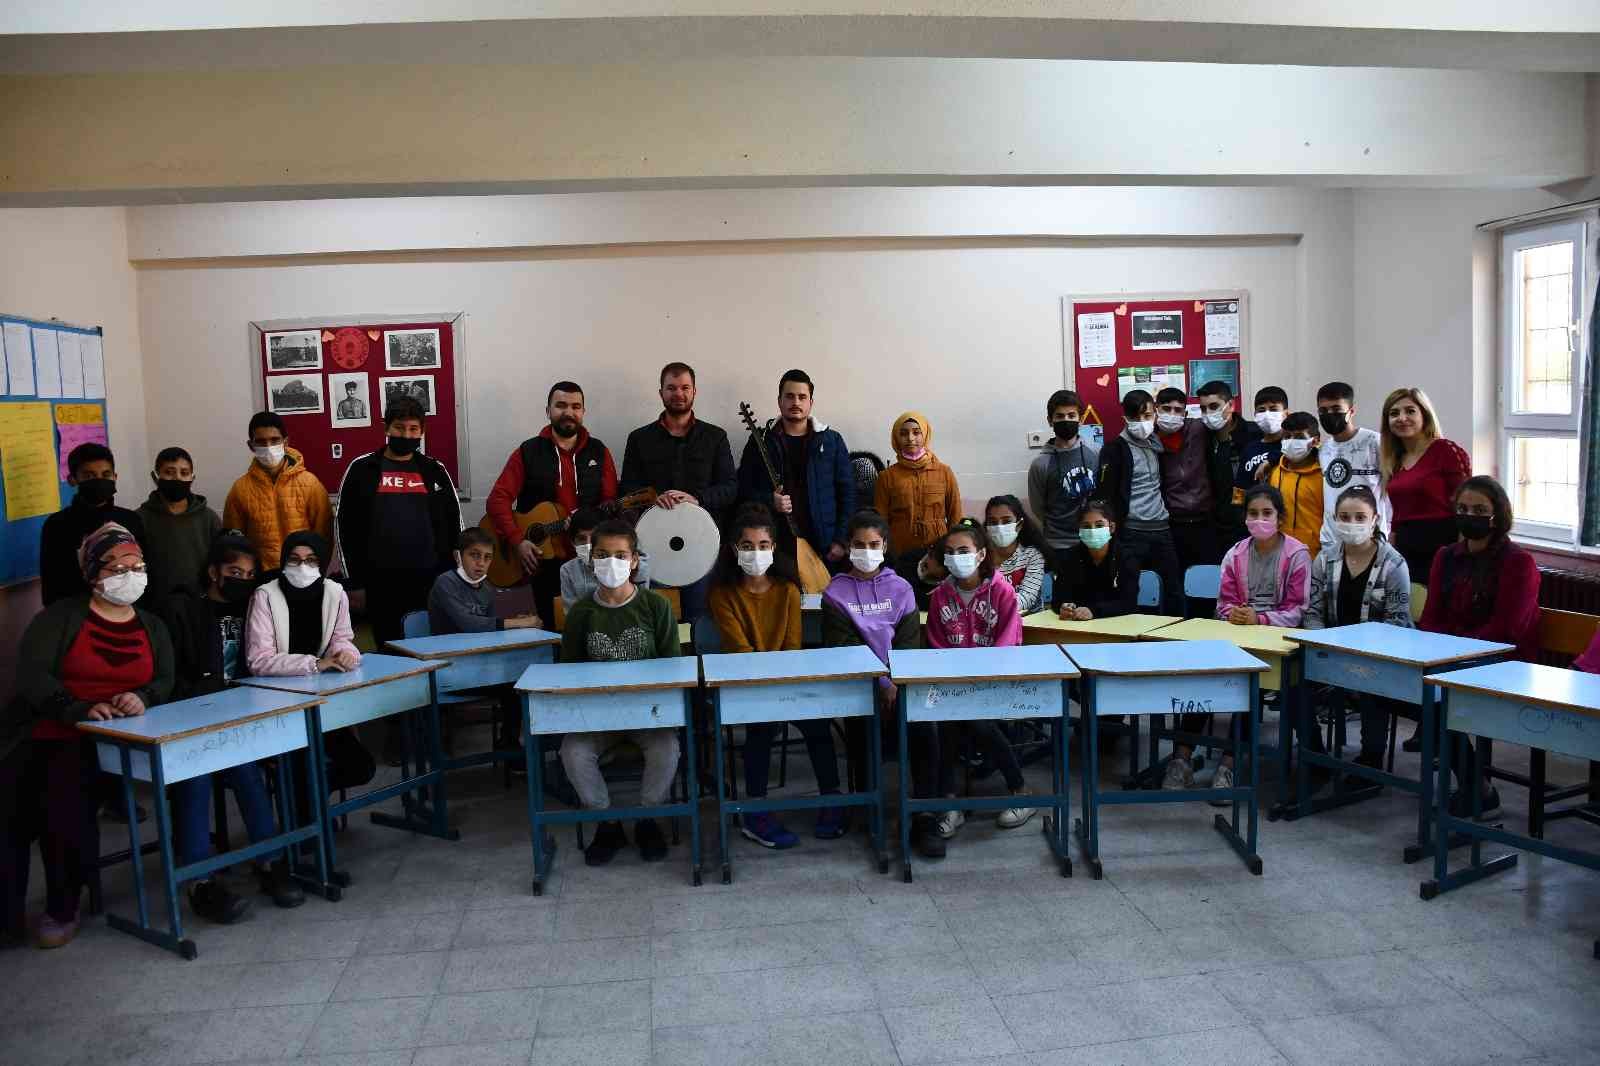 Bu çocuklar geleneksel Türk kültürü ile teknolojiyi bir araya getirdi #aydin